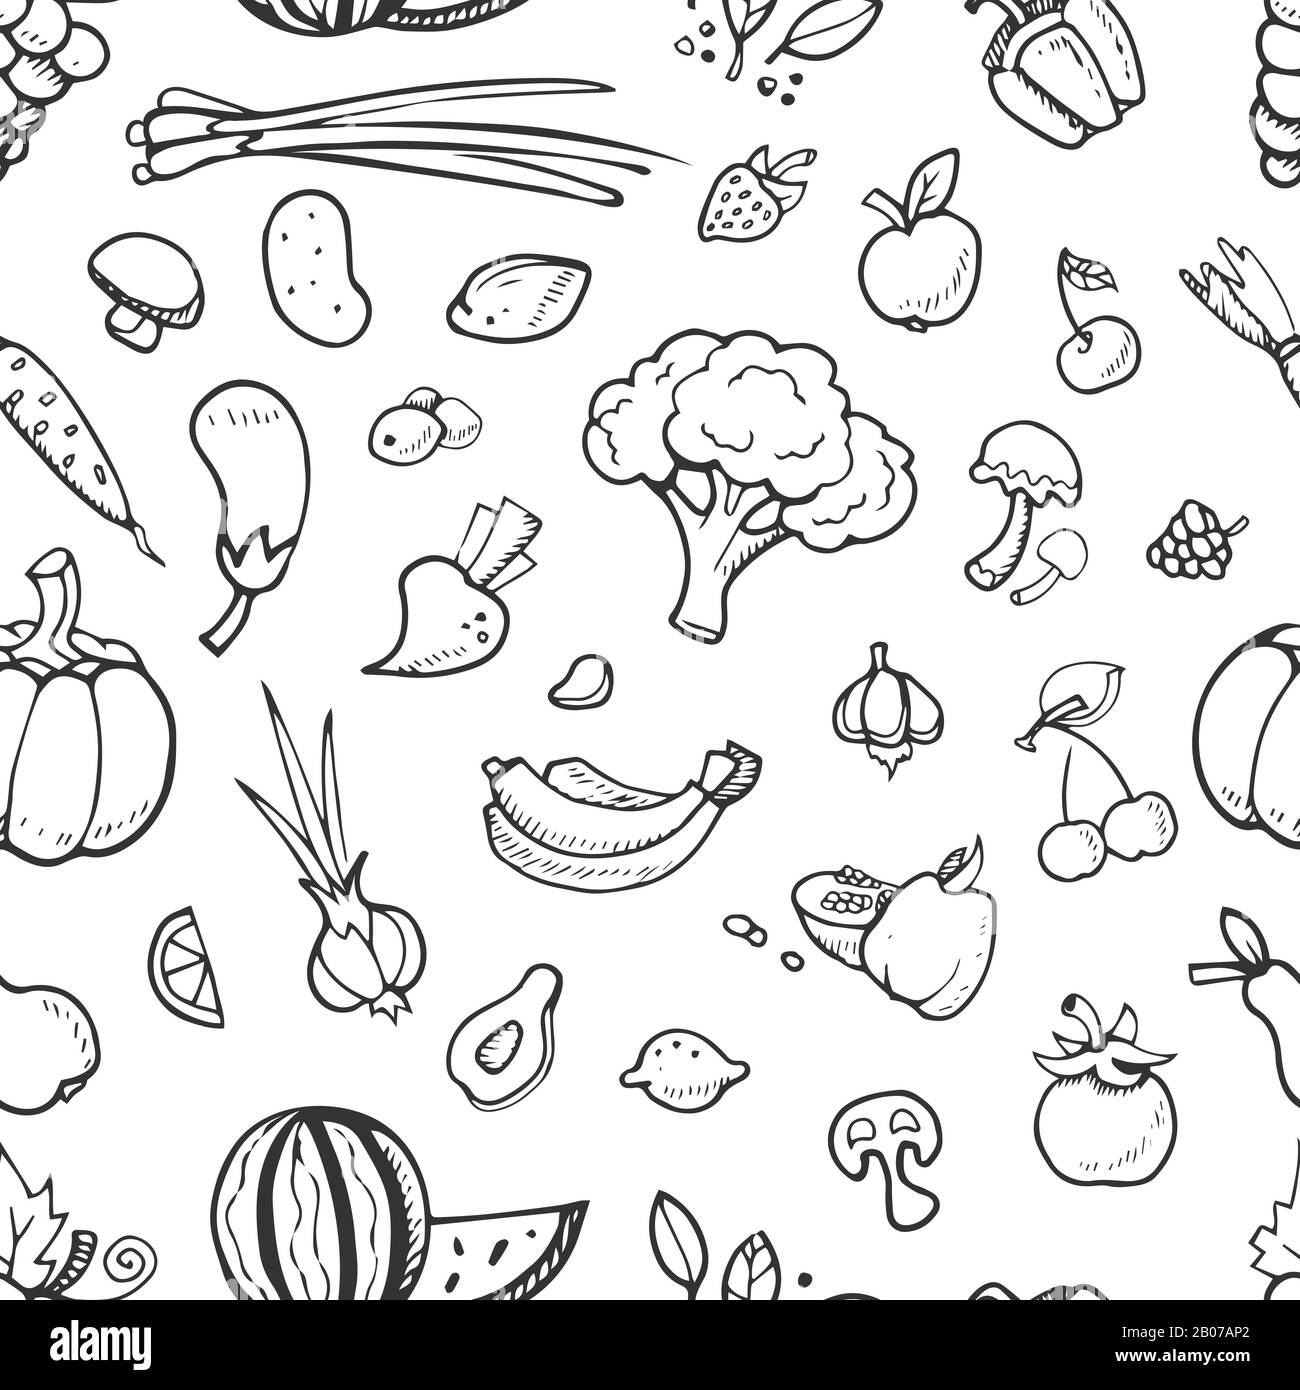 Họa tiết hoa quả và rau củ vẽ tay vector sẽ đưa bạn vào một thế giới tràn đầy màu sắc, tươi mới và đầy sáng tạo. Với đủ các loại trái cây và rau củ được vẽ đẹp, bạn sẽ dễ dàng sử dụng chúng để trang trí tài liệu, blog hay phương tiện truyền thông của mình.